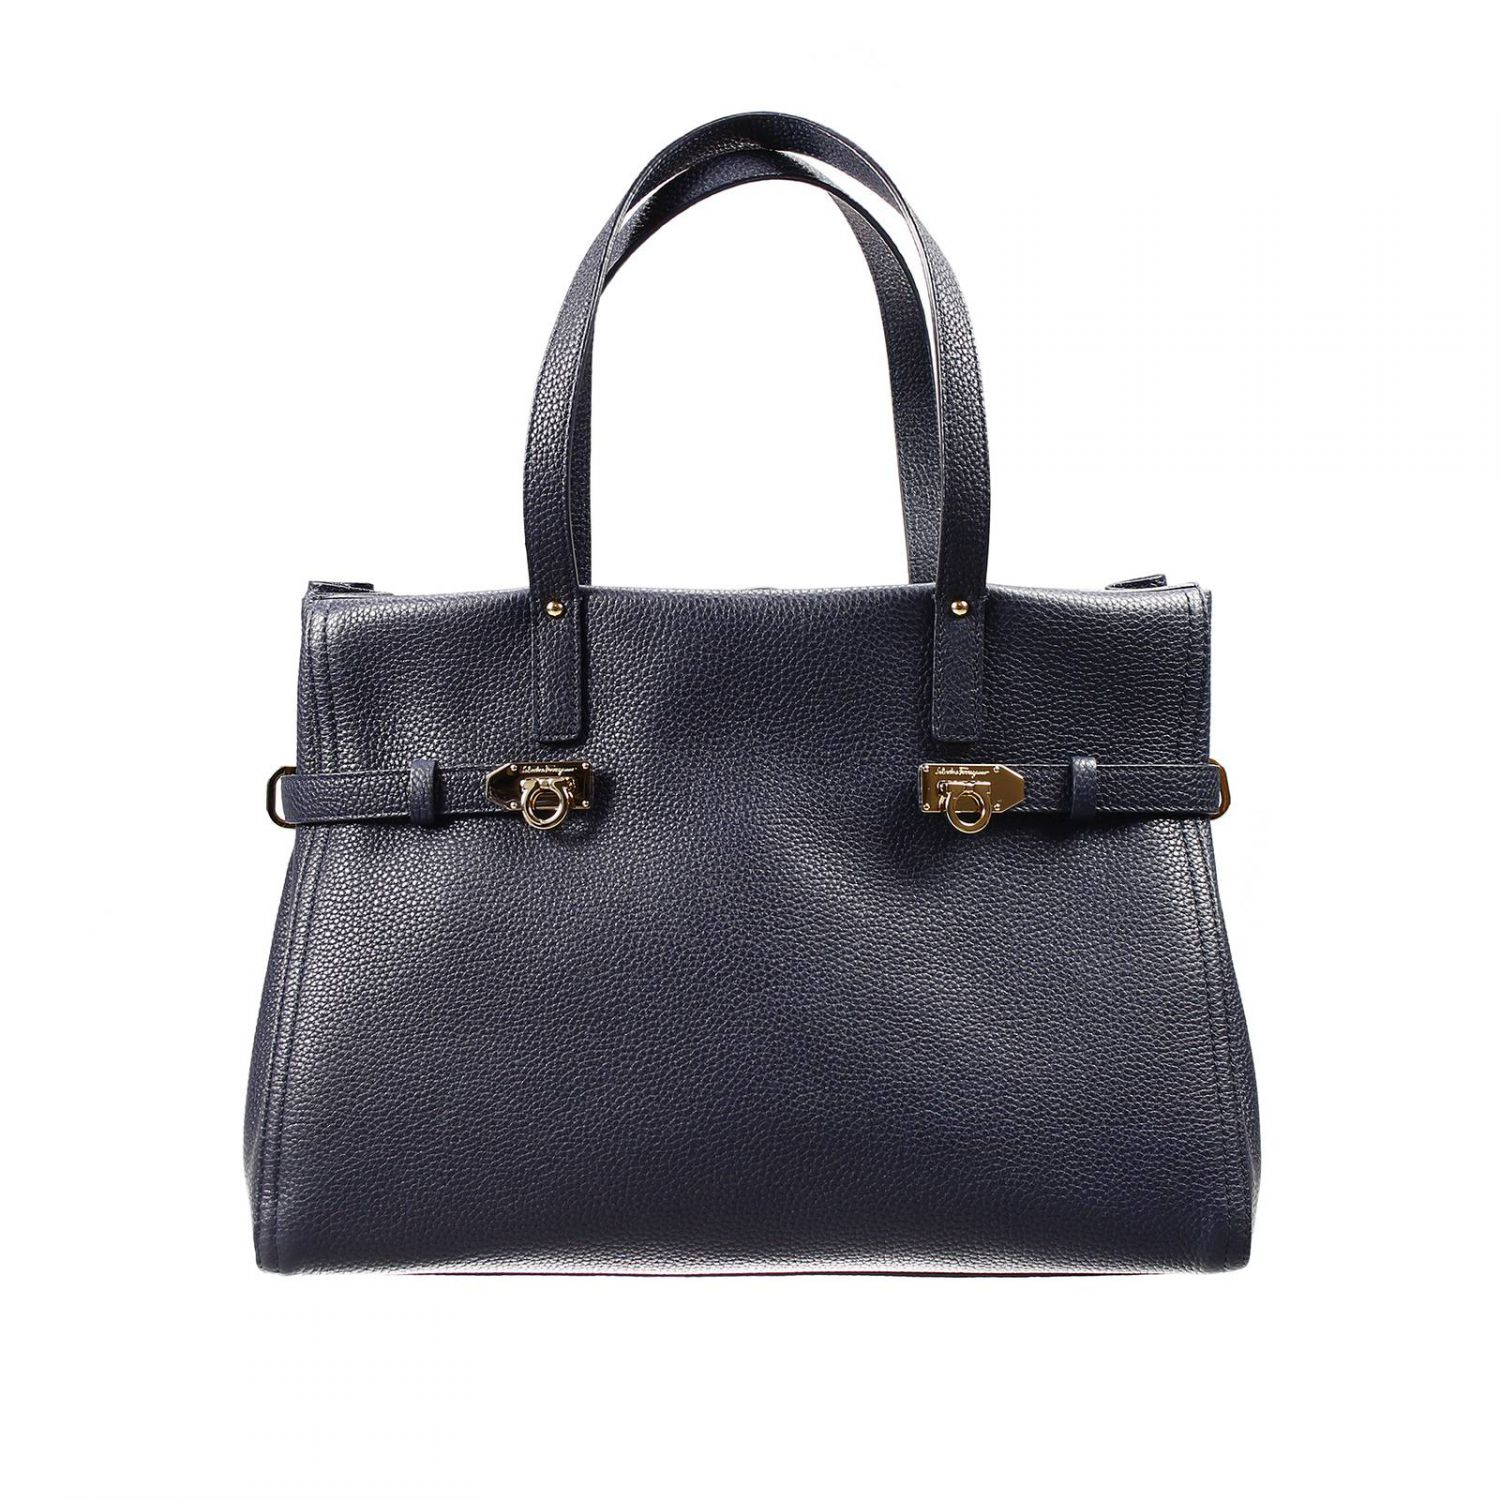 Ferragamo Shopping Bag. Salvatore Ferragamo women's leather handbag ...